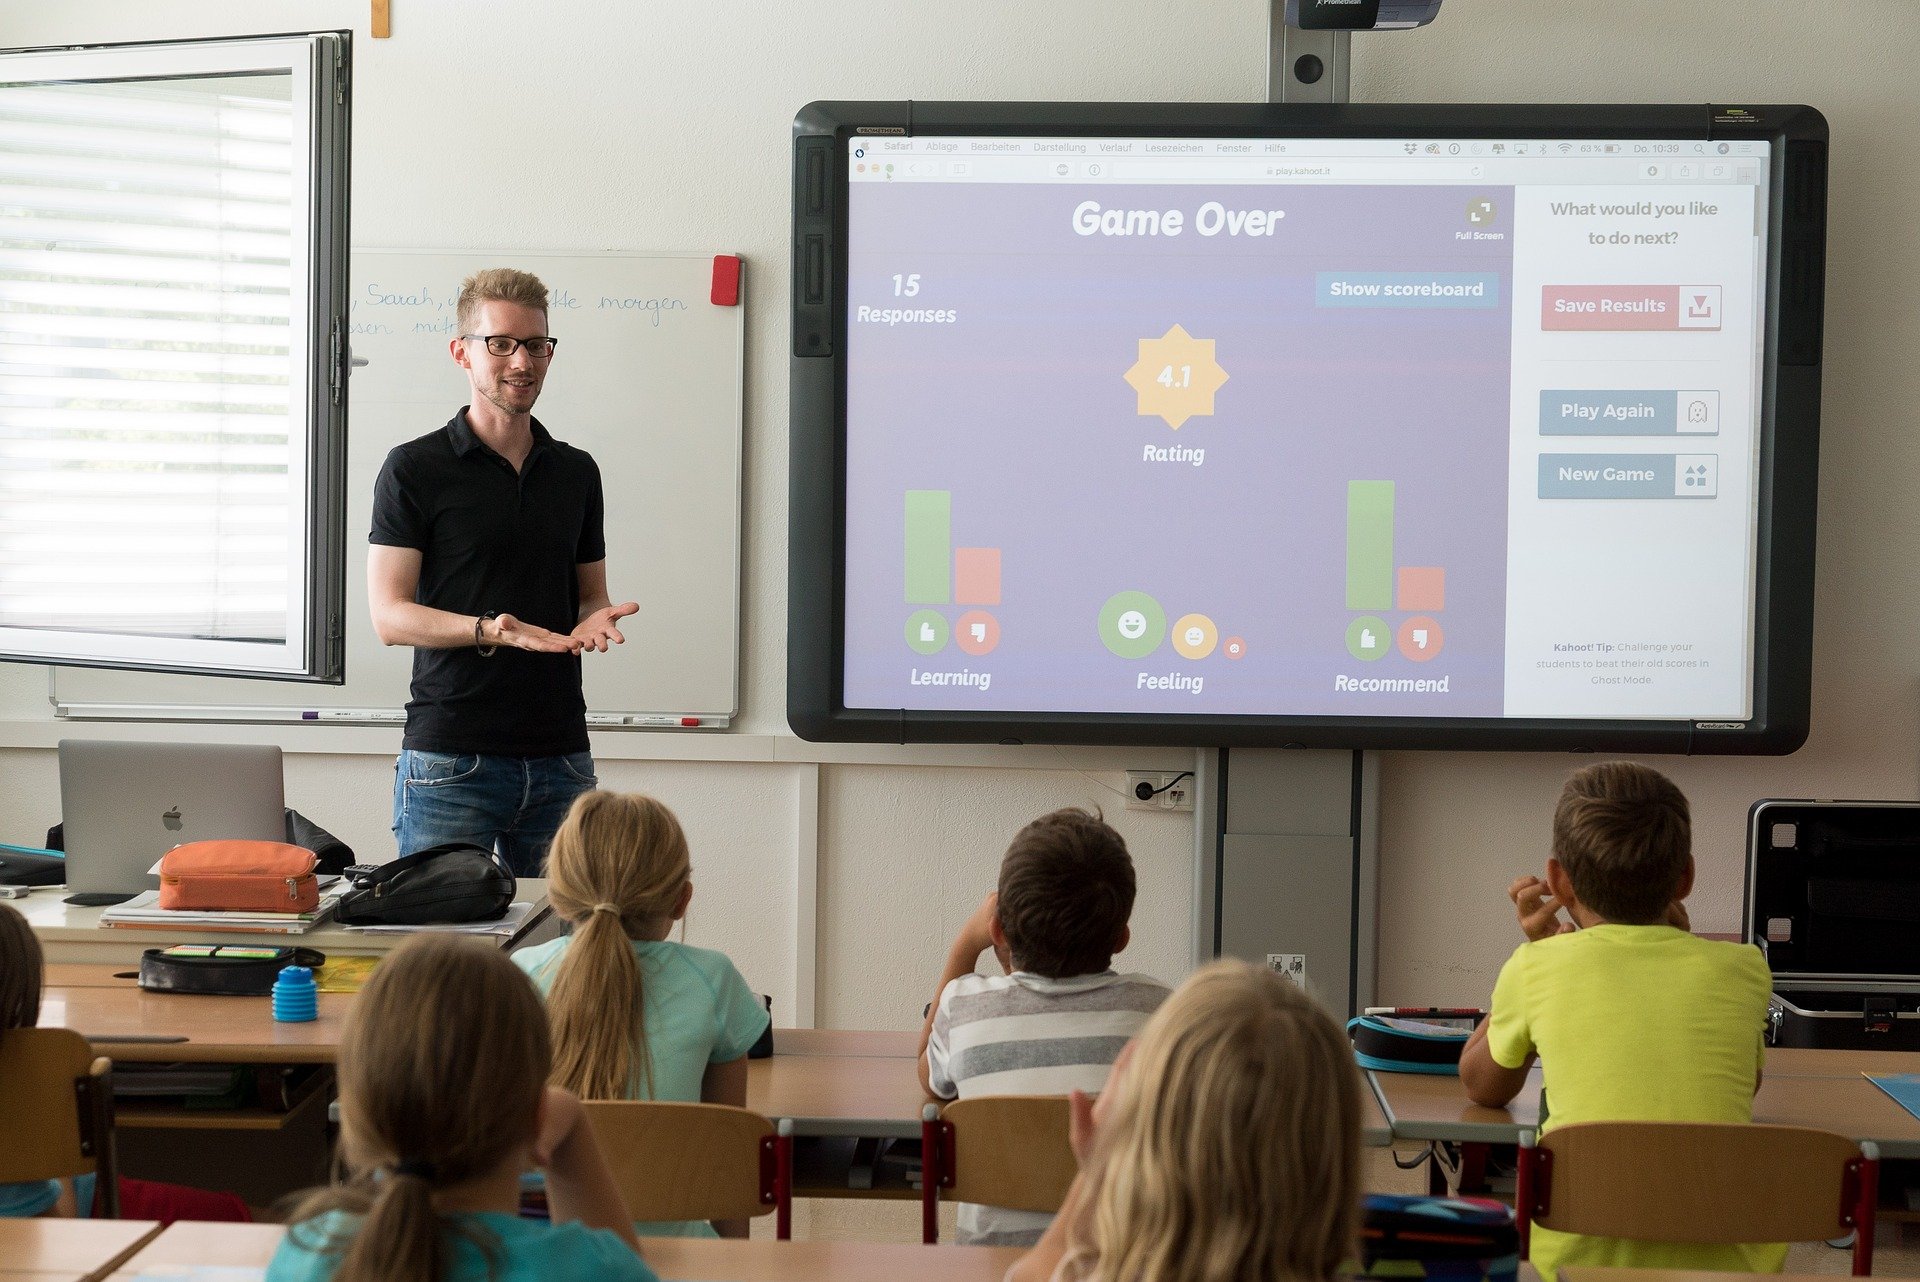 Nauczyciel stoi w klasie przed uczniami, za nim widoczny jest duży ekran na którym wyświetlają się informacje w jezyku angielskim